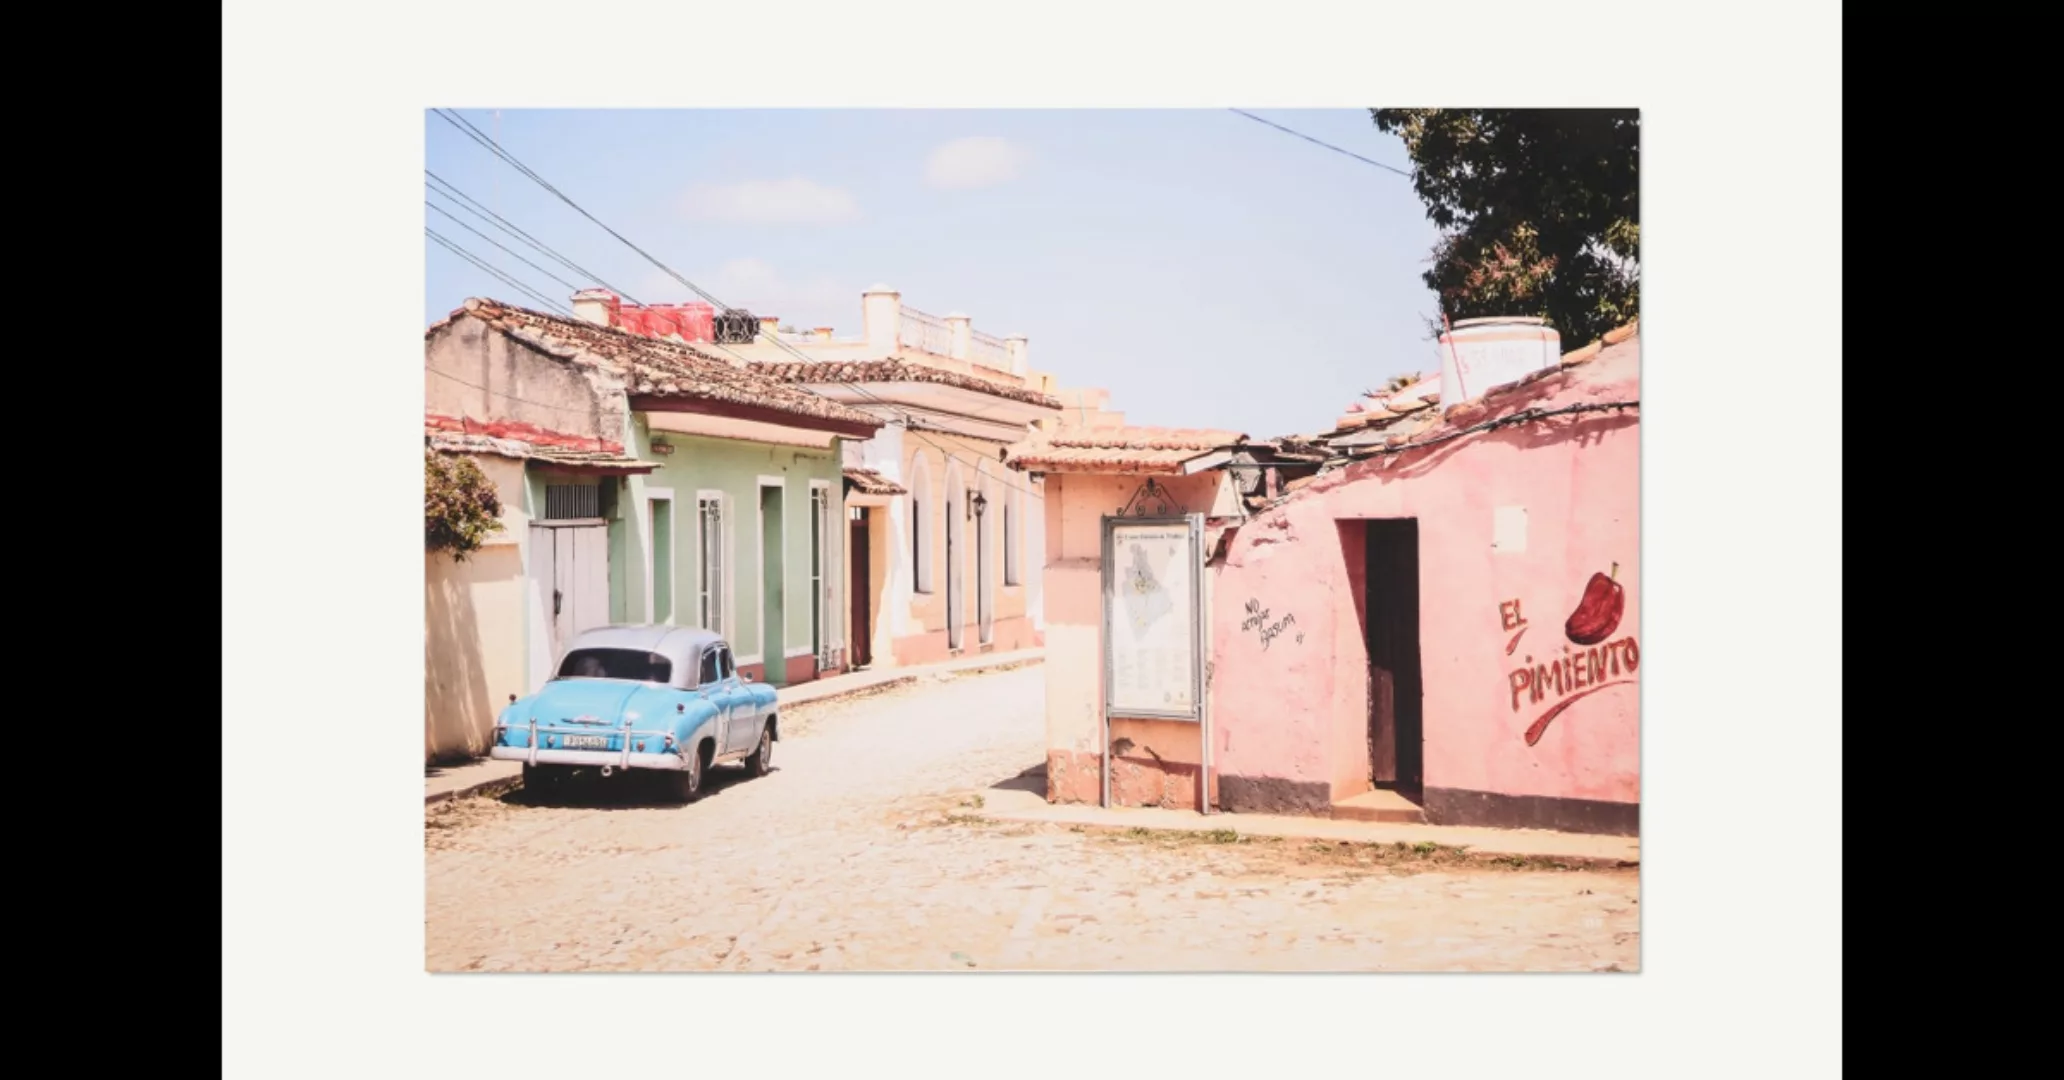 David & David Studio Cars of Cuba N.2 Kunstdruck von Thao Courtial (70 x 10 günstig online kaufen